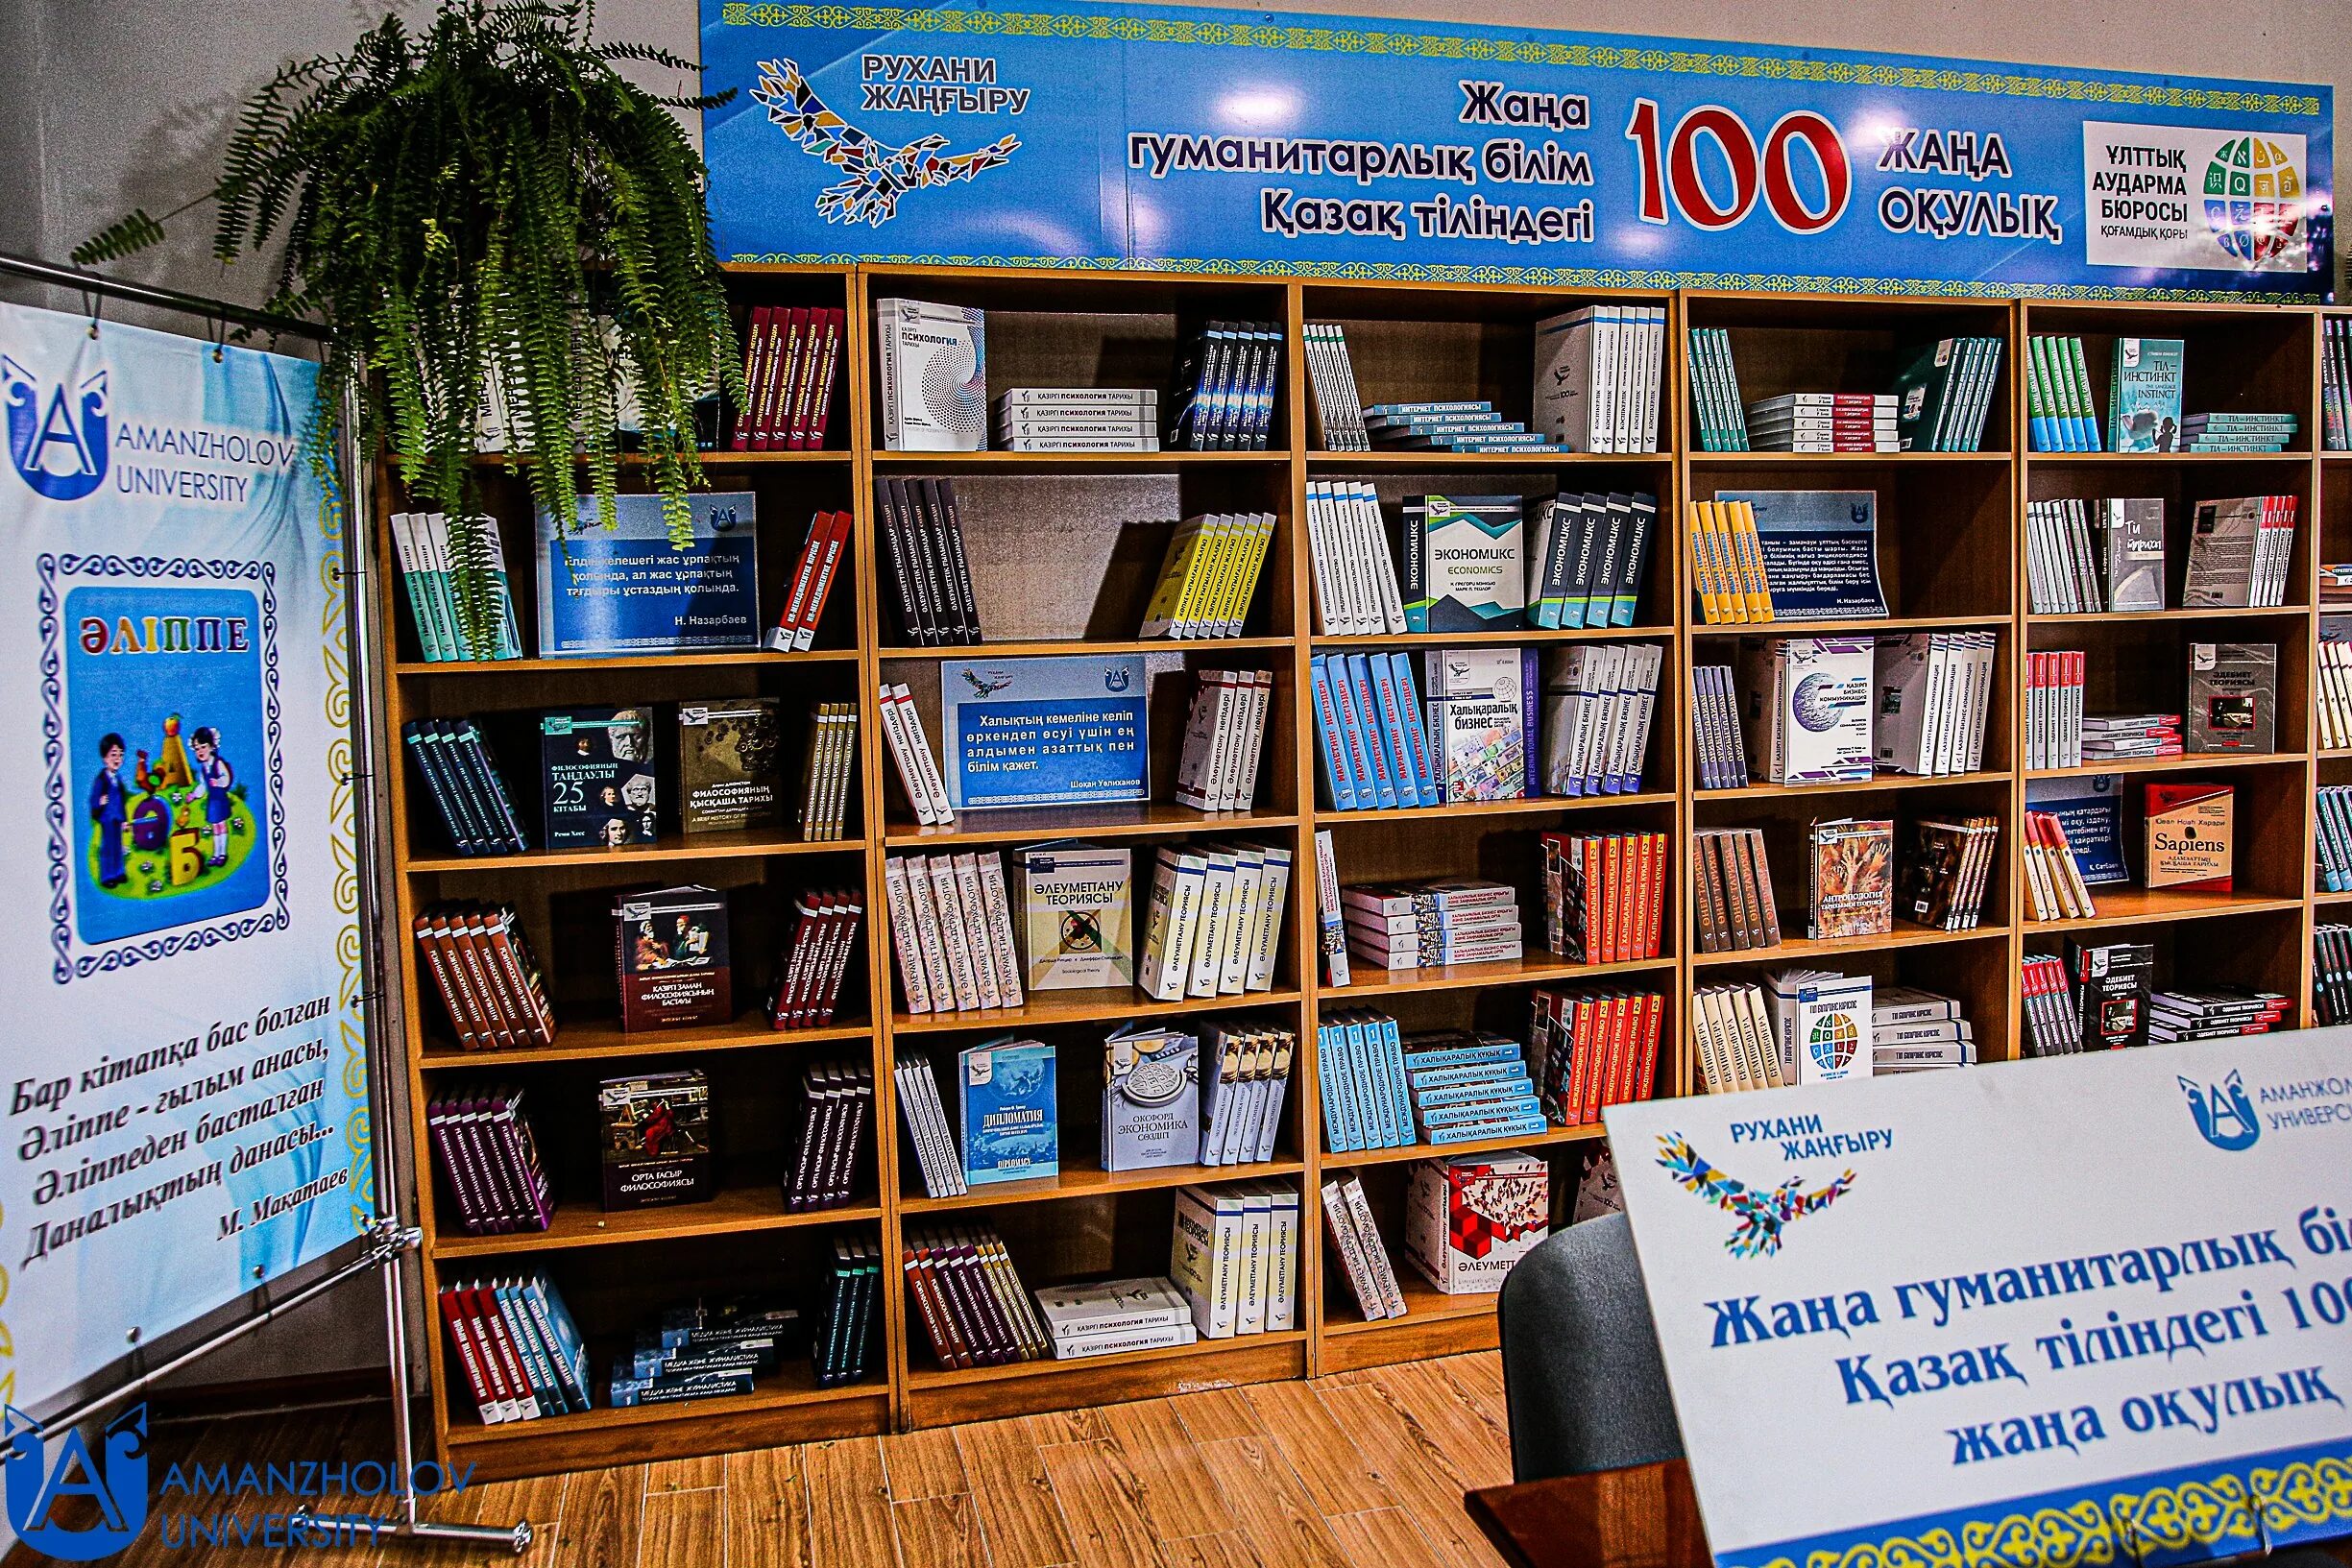 100 новых учебников. 100 Книг проект. Библиотека на казахском. В университете в библиотеку новые учебники. Новые книги по краеведению.